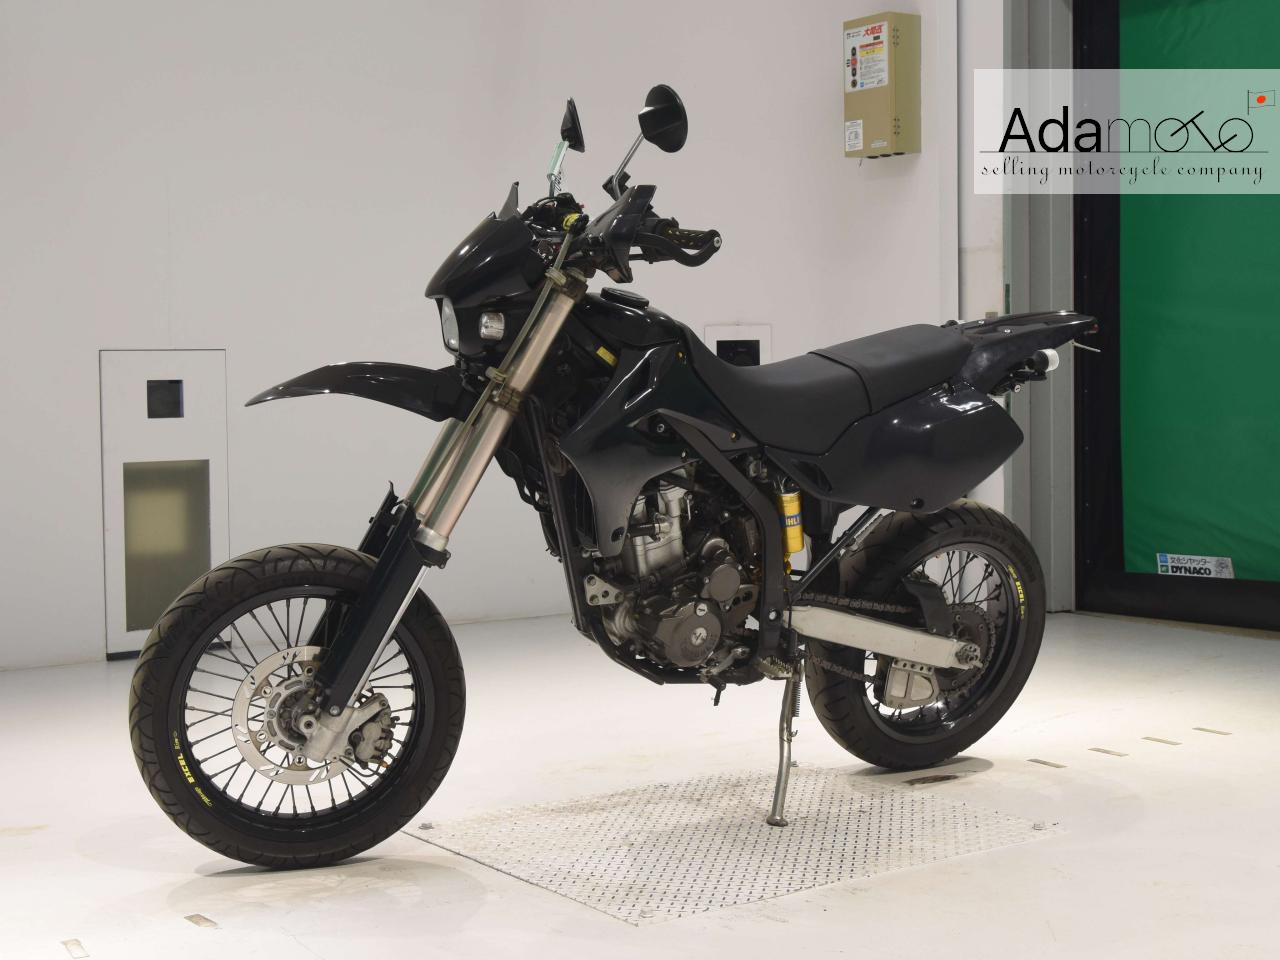 Kawasaki D-TRACKER - Adamoto - Motorcycles from Japan